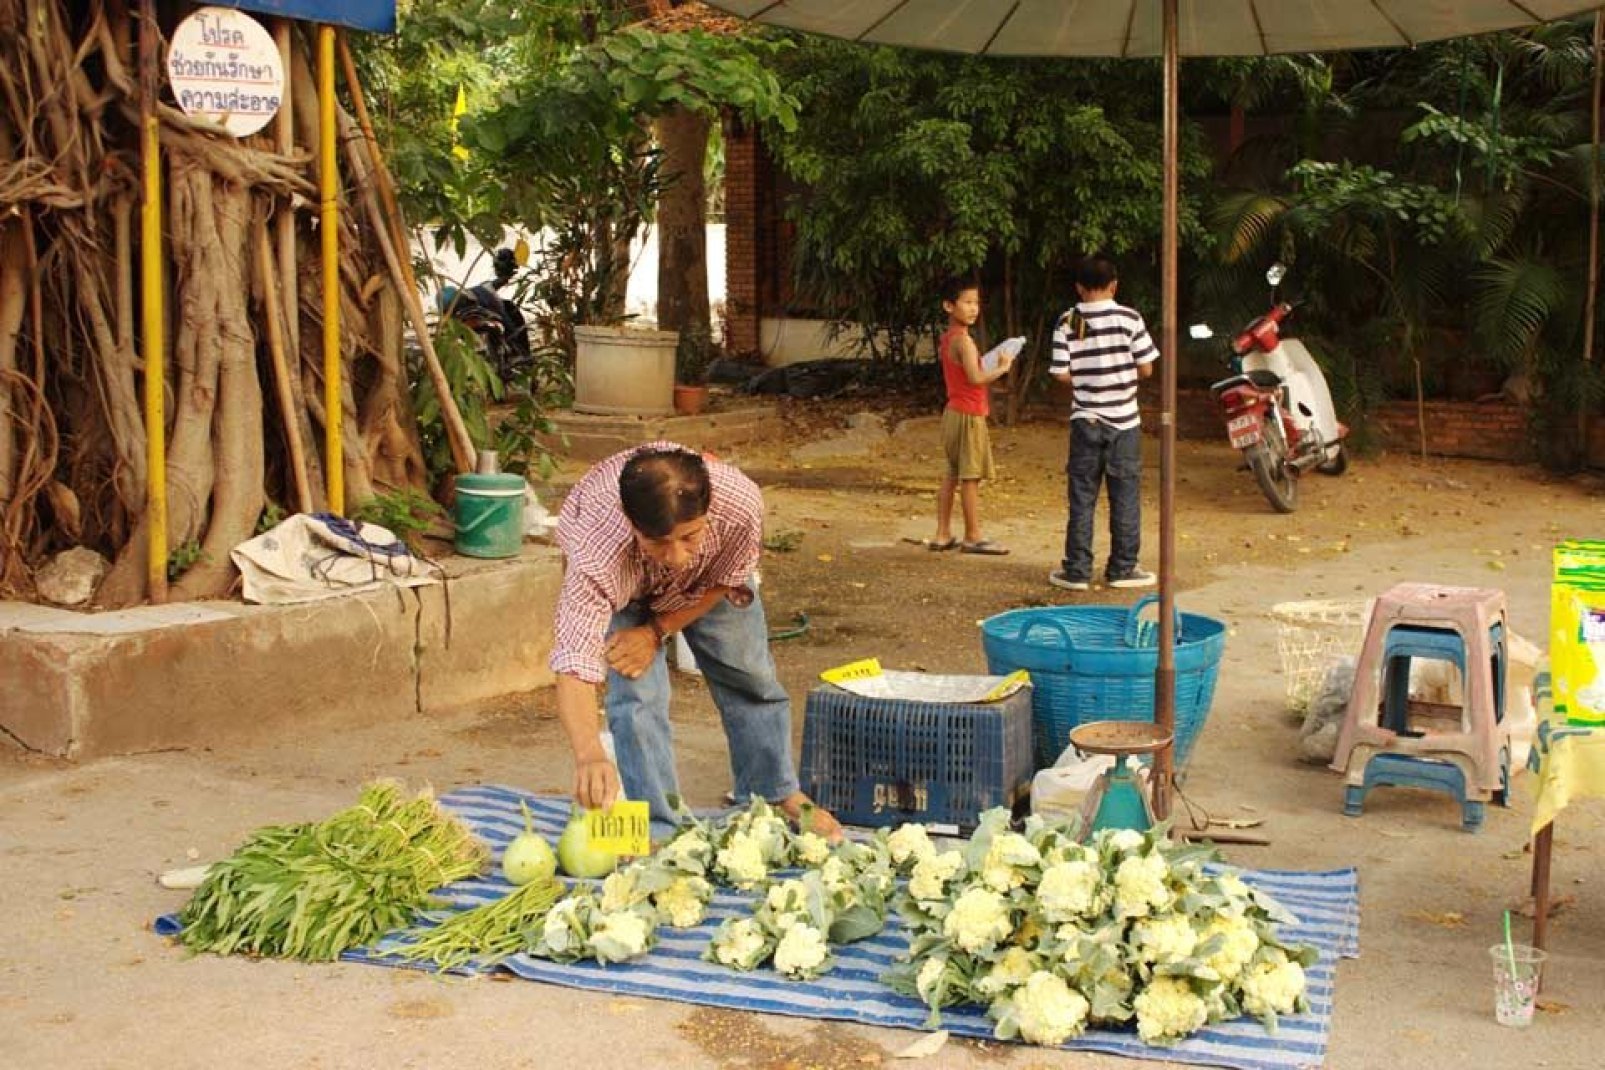 Questo mercato alimentare è organizzato al pomeriggio vicino al tempio birmano.